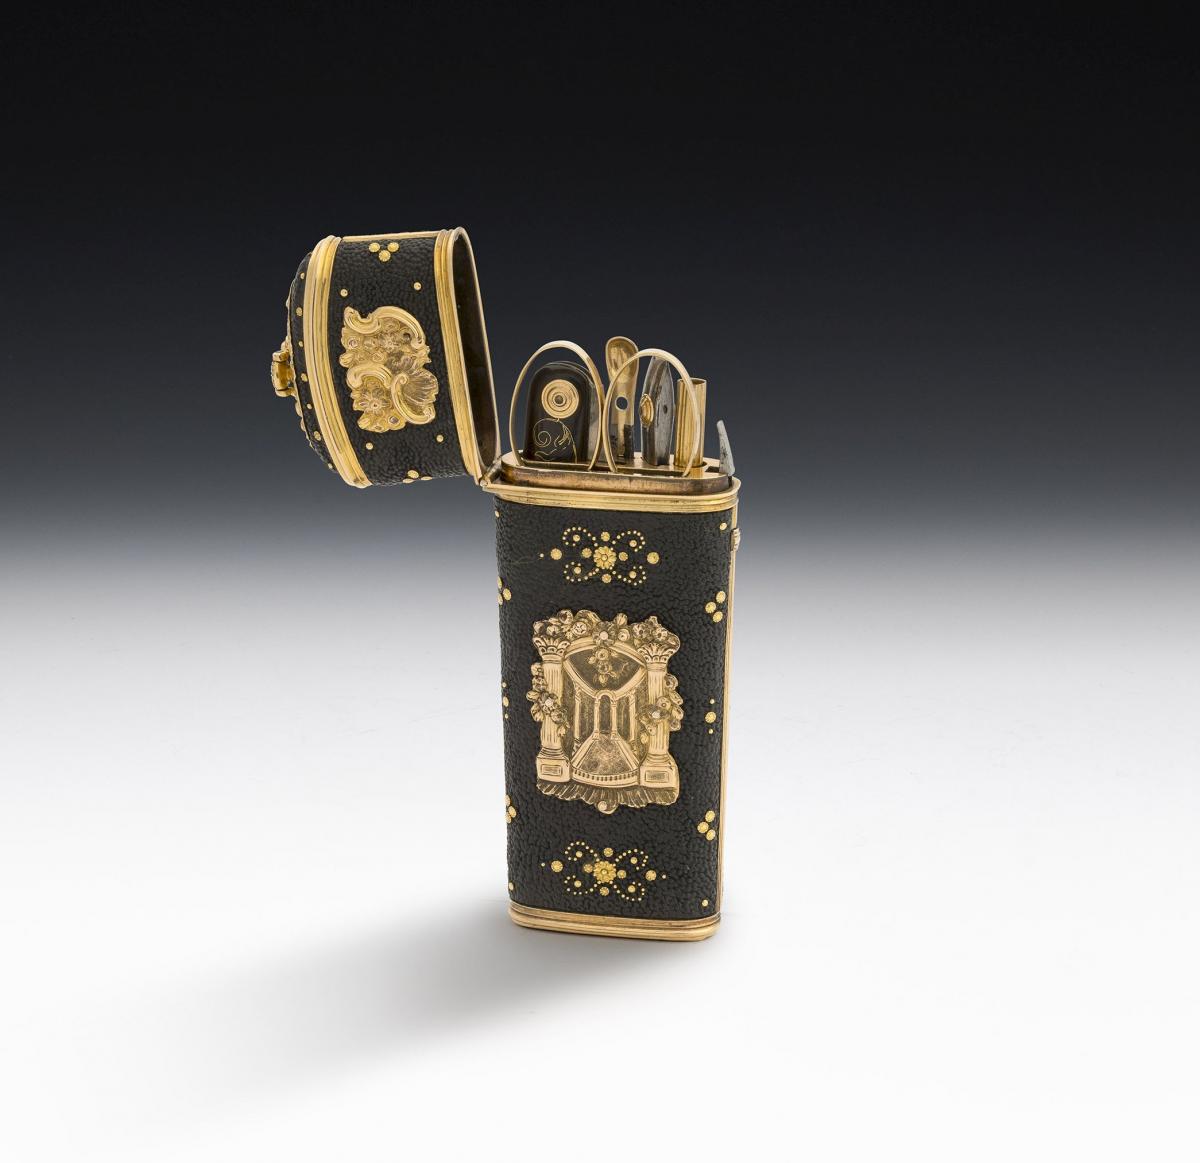 An important & beautiful George II Gold mounted Etui made in London circa 1745